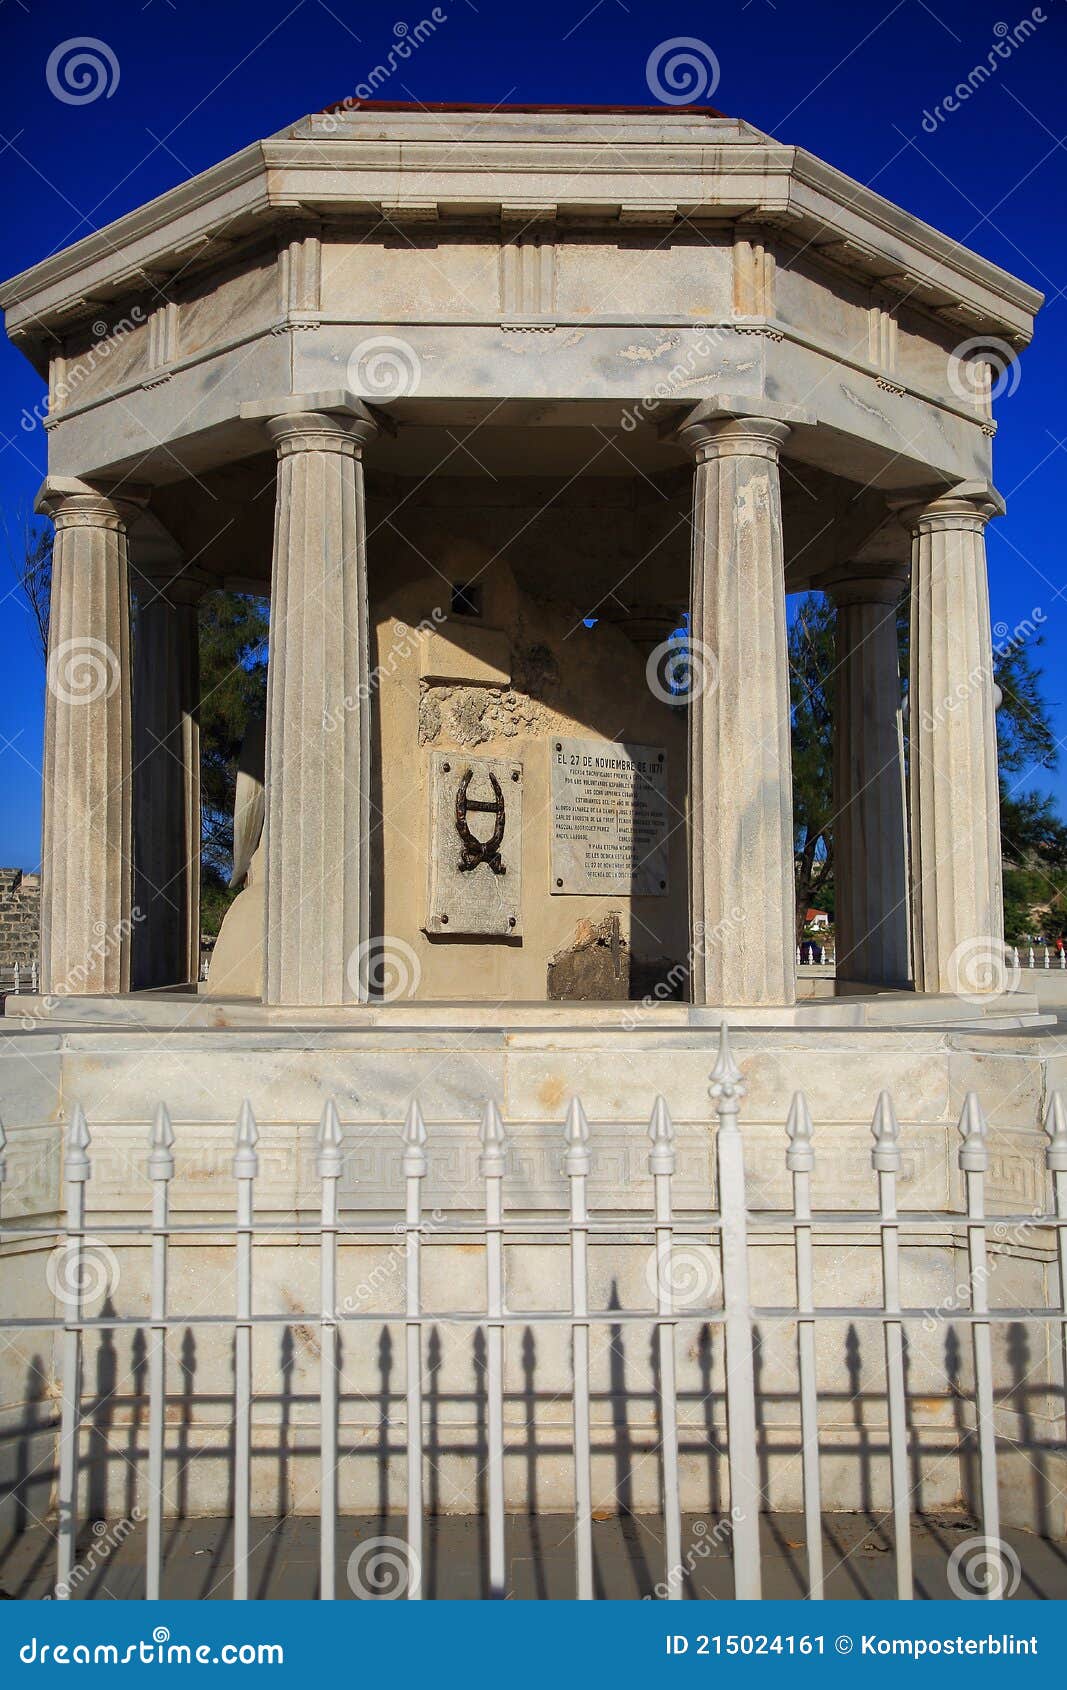 rotunda of the monument to medical students in parque martires del 71. monumento a los ocho estudiantes de medicina. havana, cuba